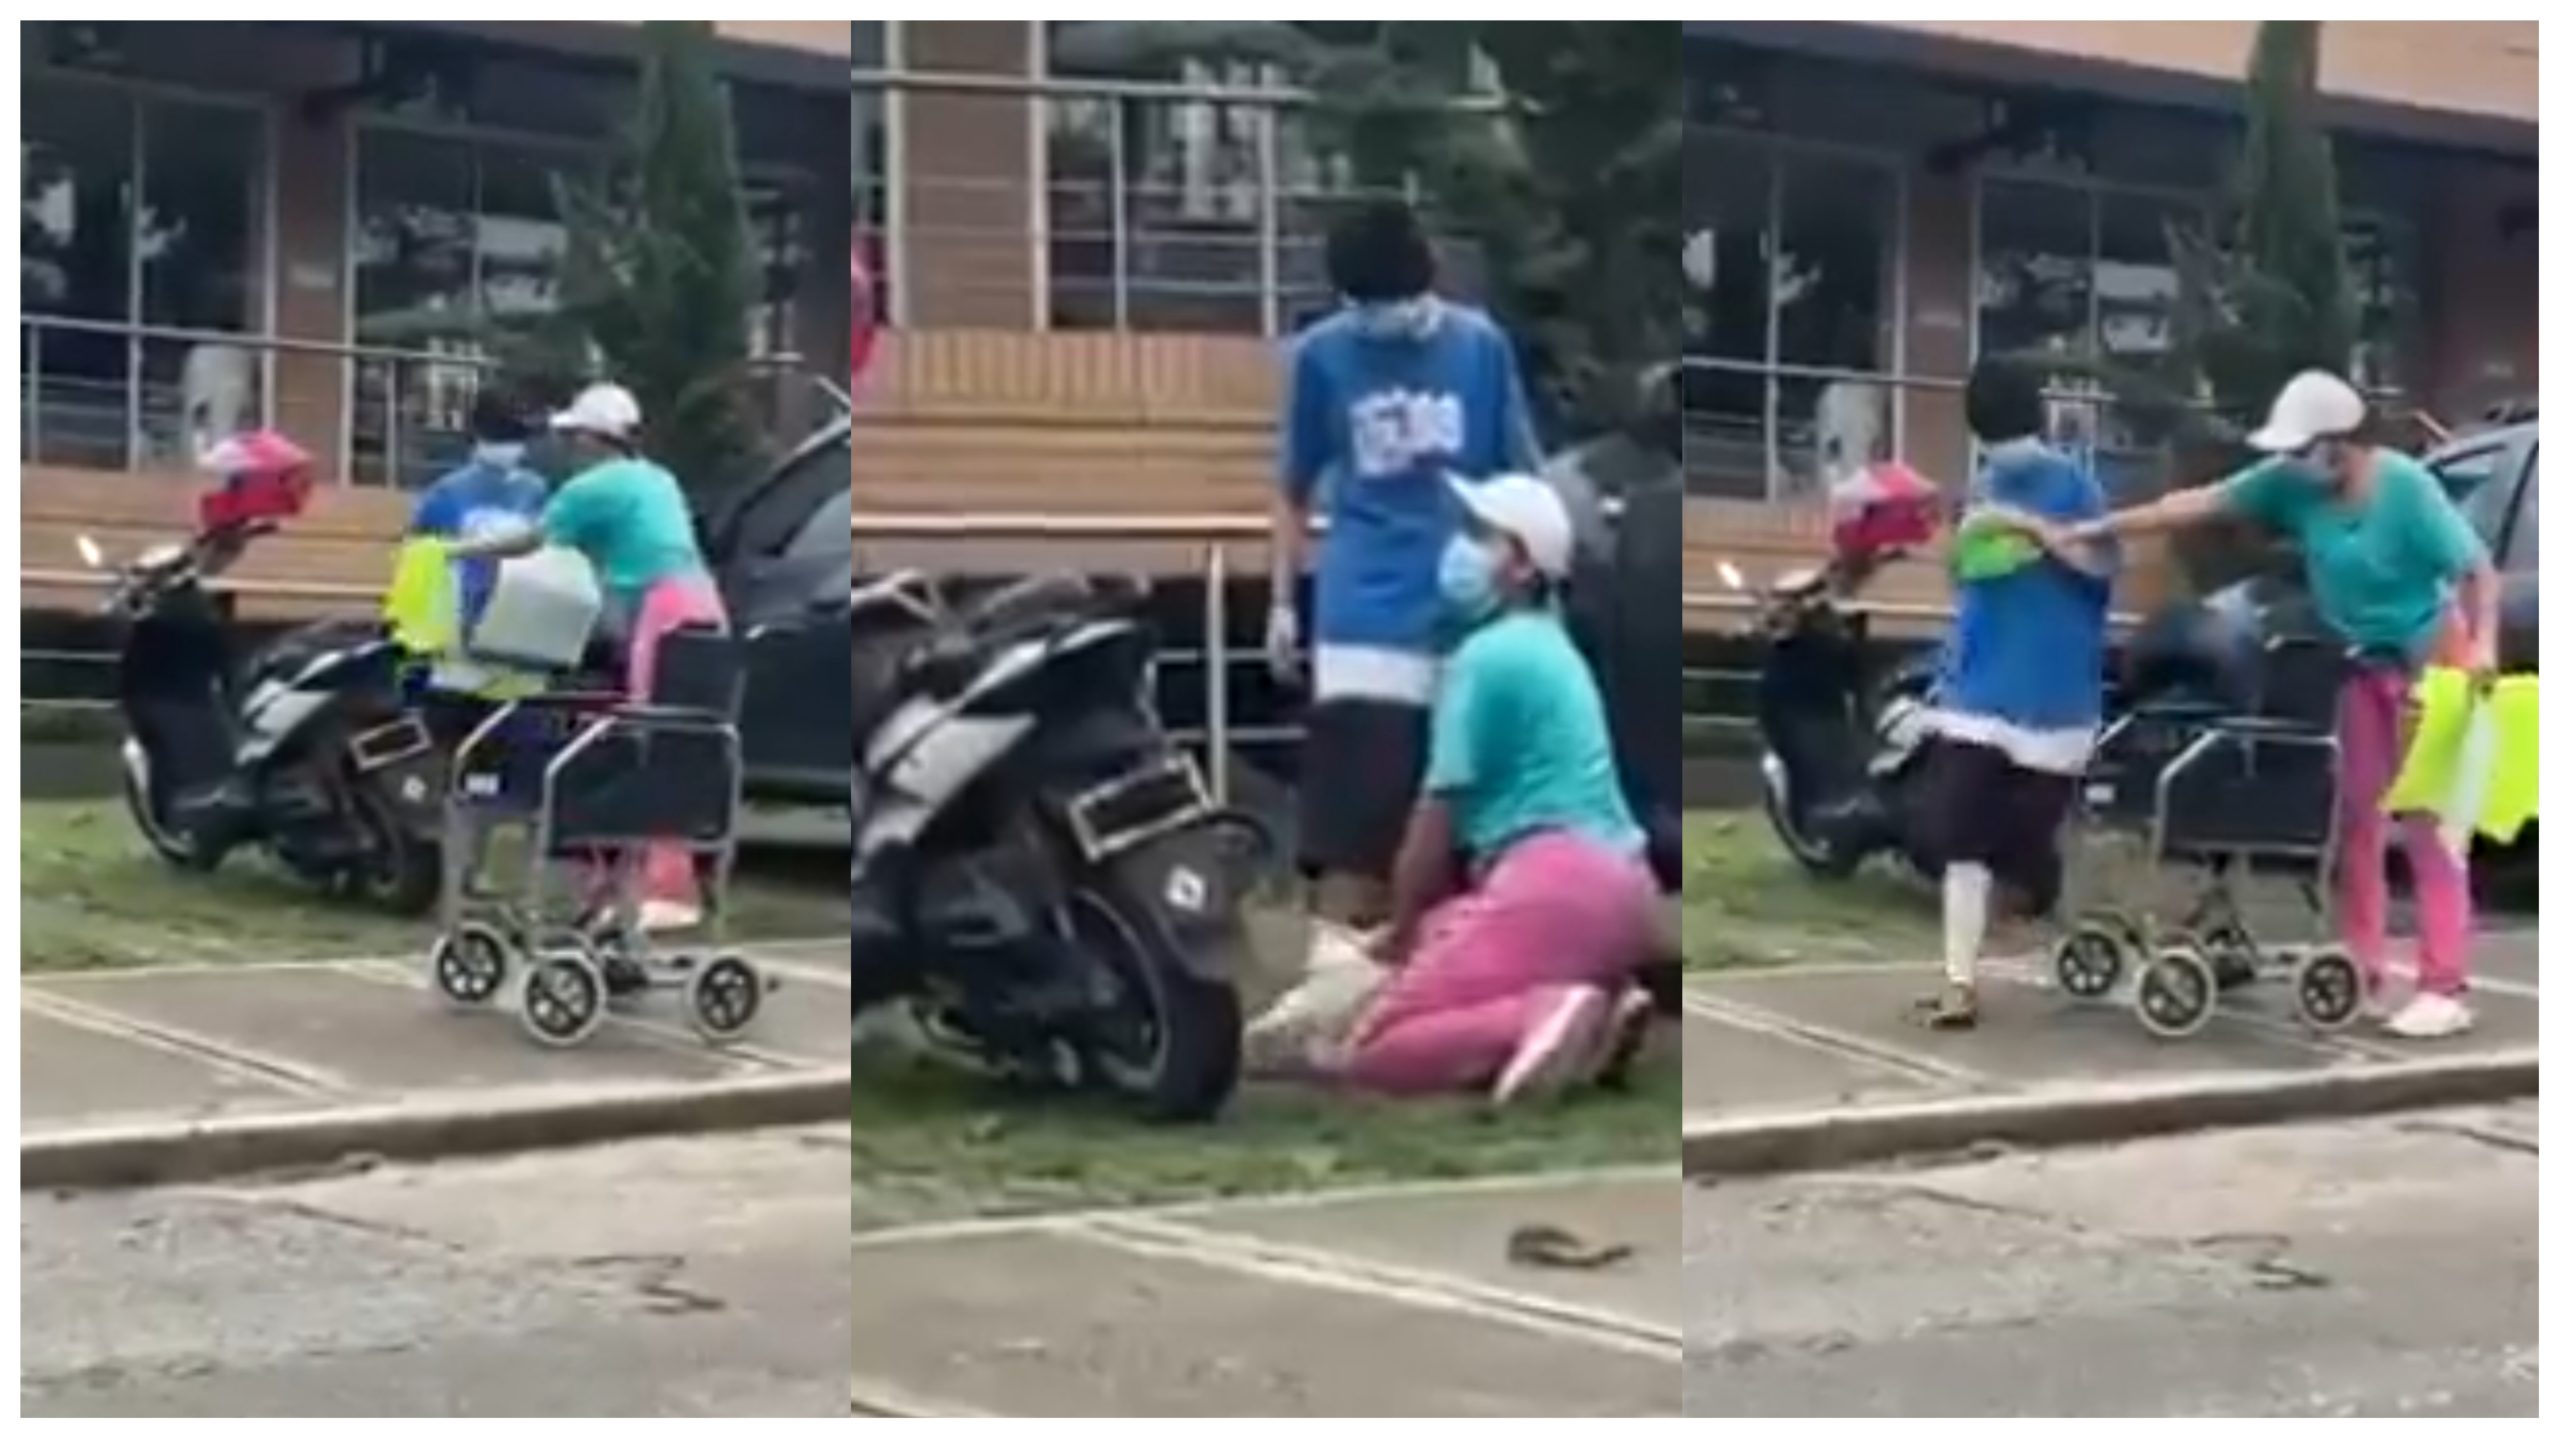 Indignante, madre hacia pasar a su hija por discapacitada para pedir limosna